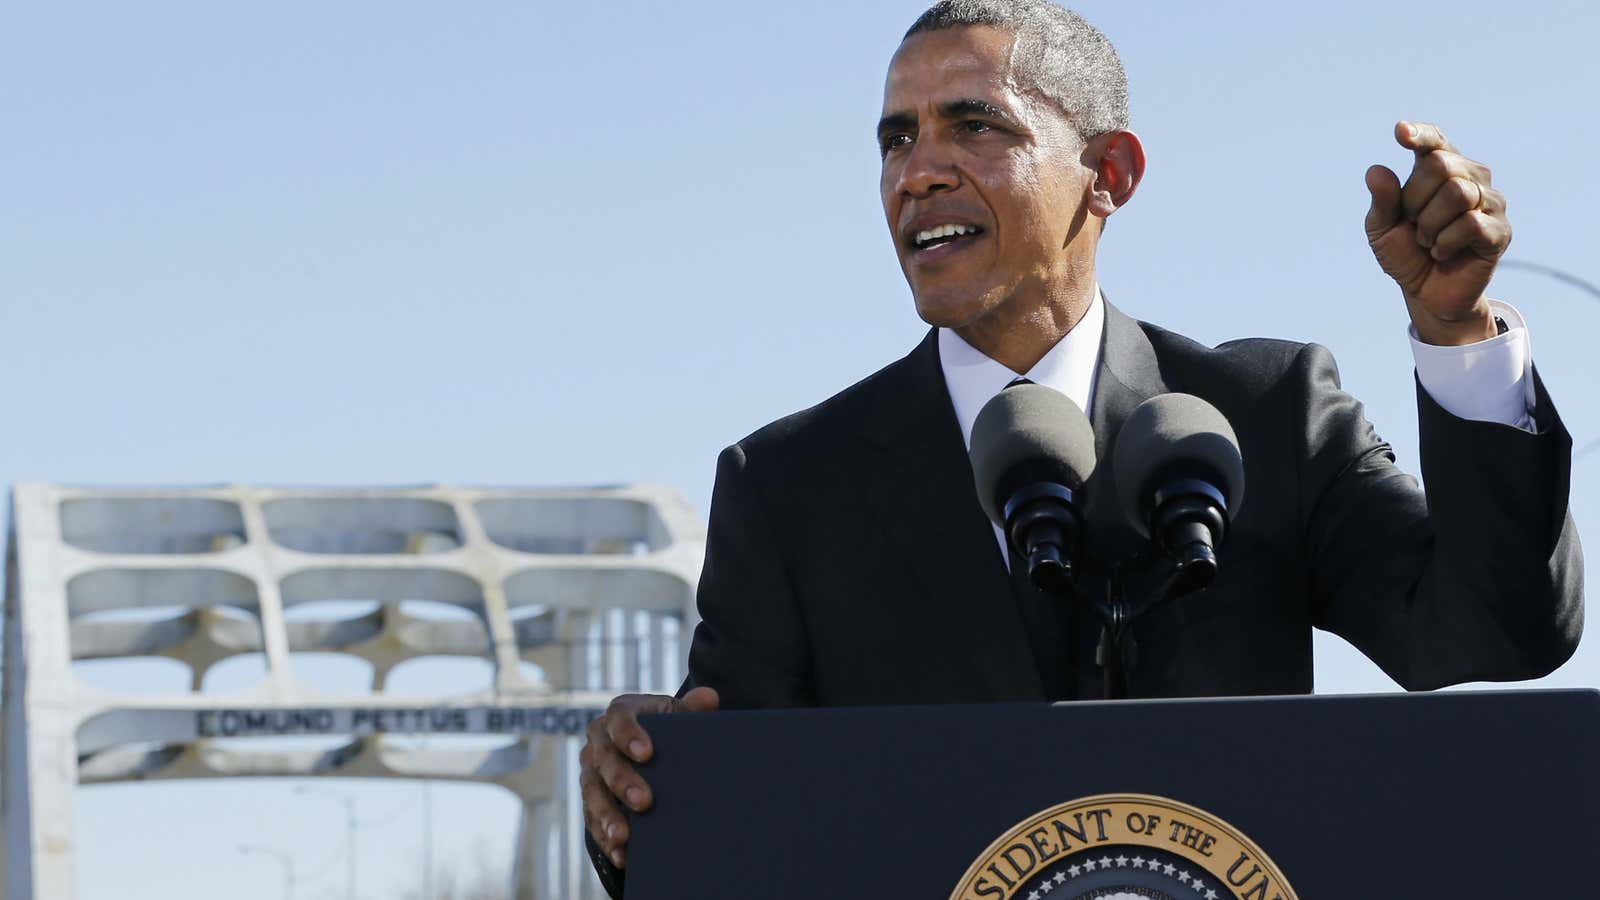 Obama speaks in front of the Edmund Pettus Bridge.